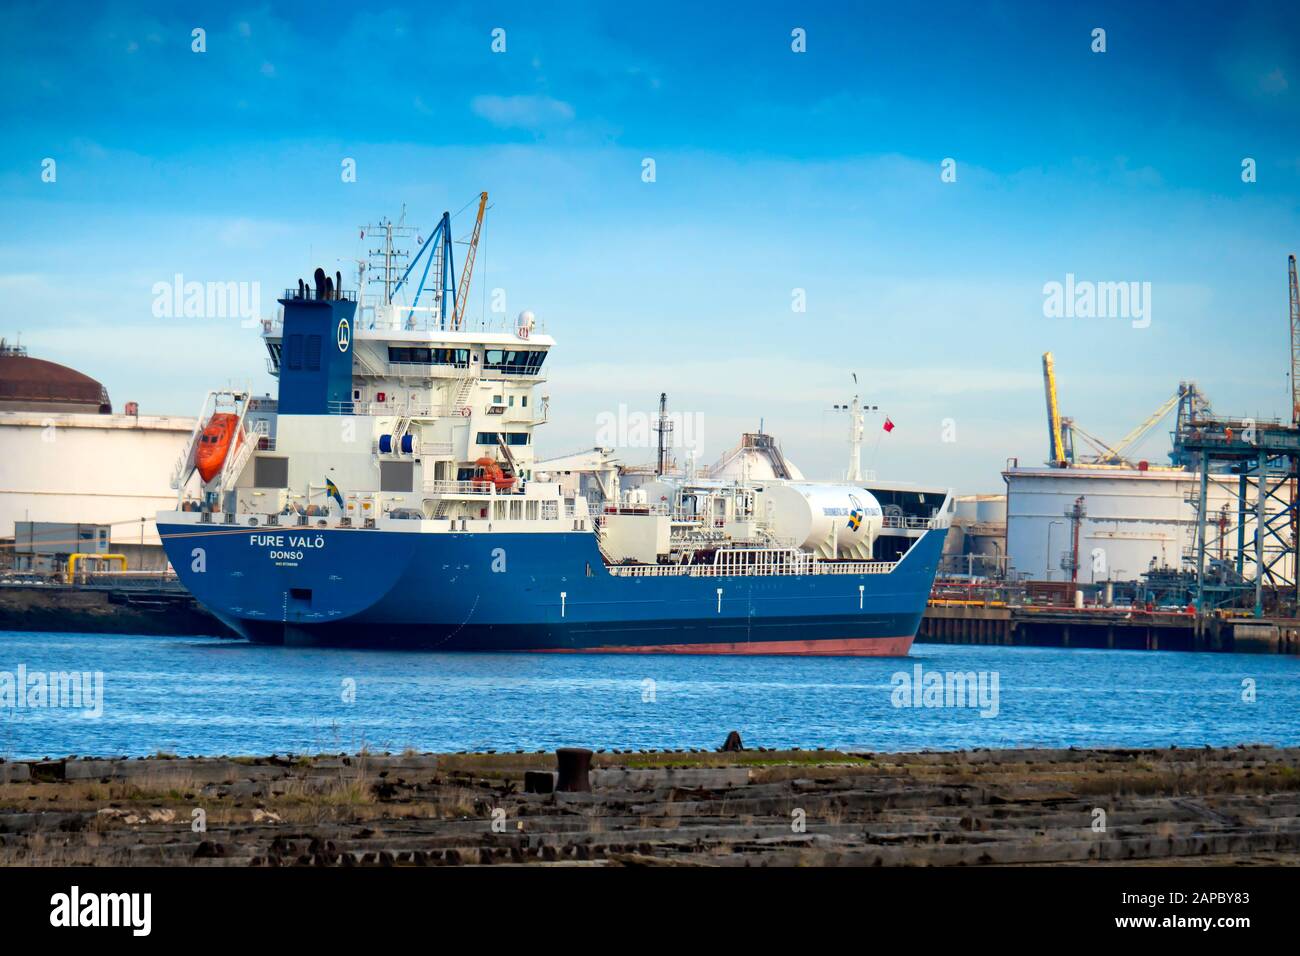 Pétrole/chimique Tanker Fure Valo, numéro OMI 9739836 amarré à la raffinerie de pétrole sur la River Tees Angleterre Royaume-Uni Banque D'Images